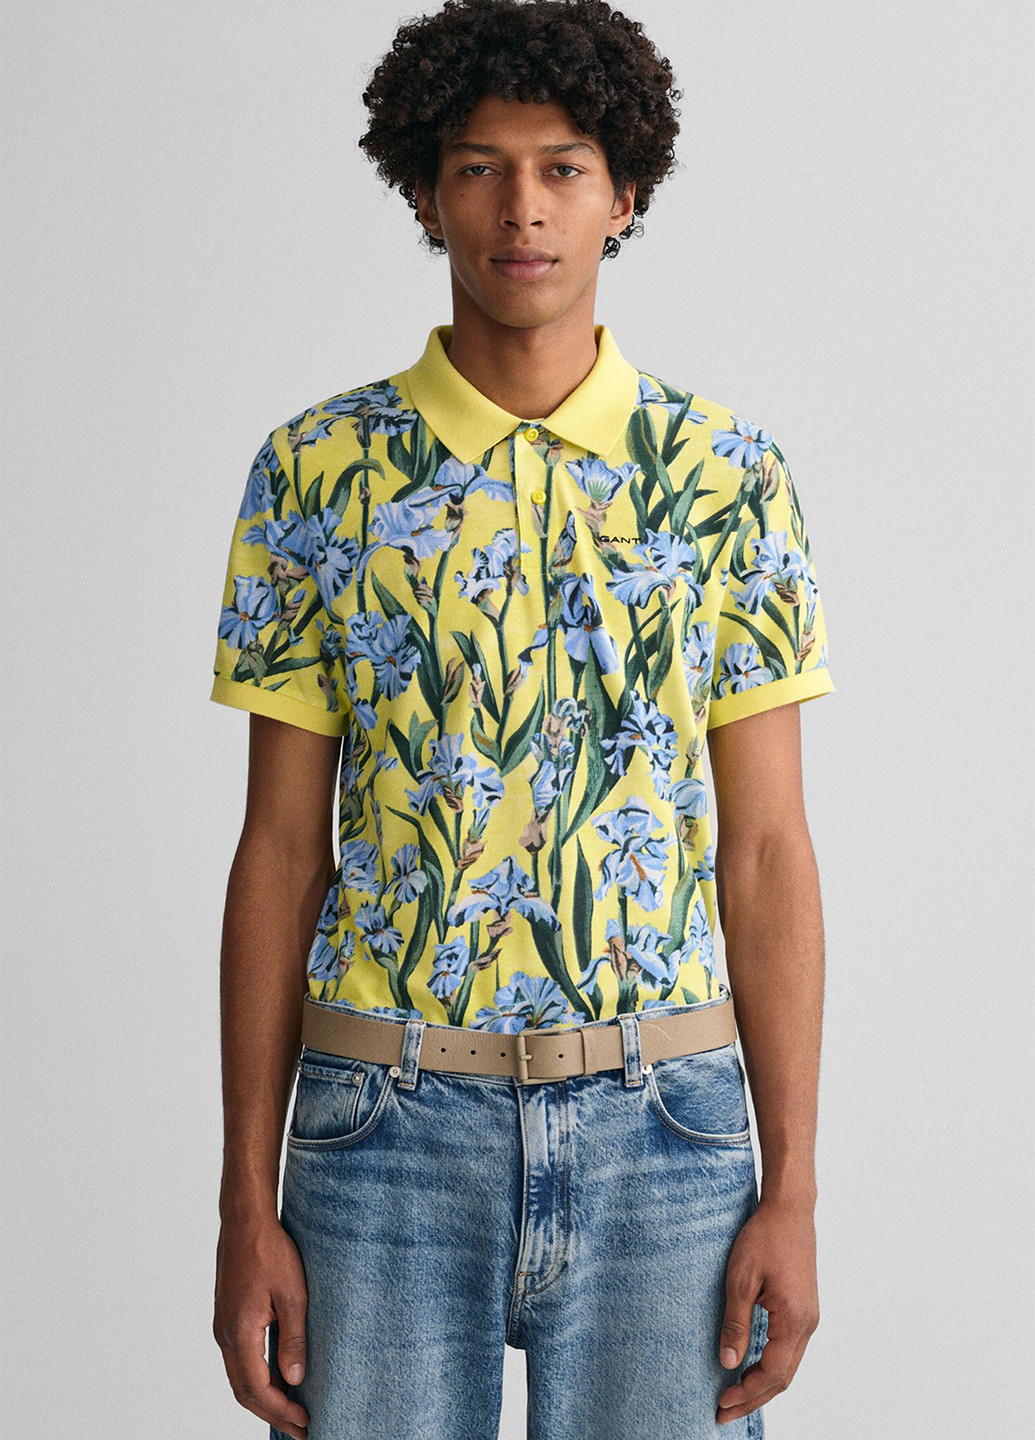 Цветная футболка-поло для мужчин Gant с цветочным принтом